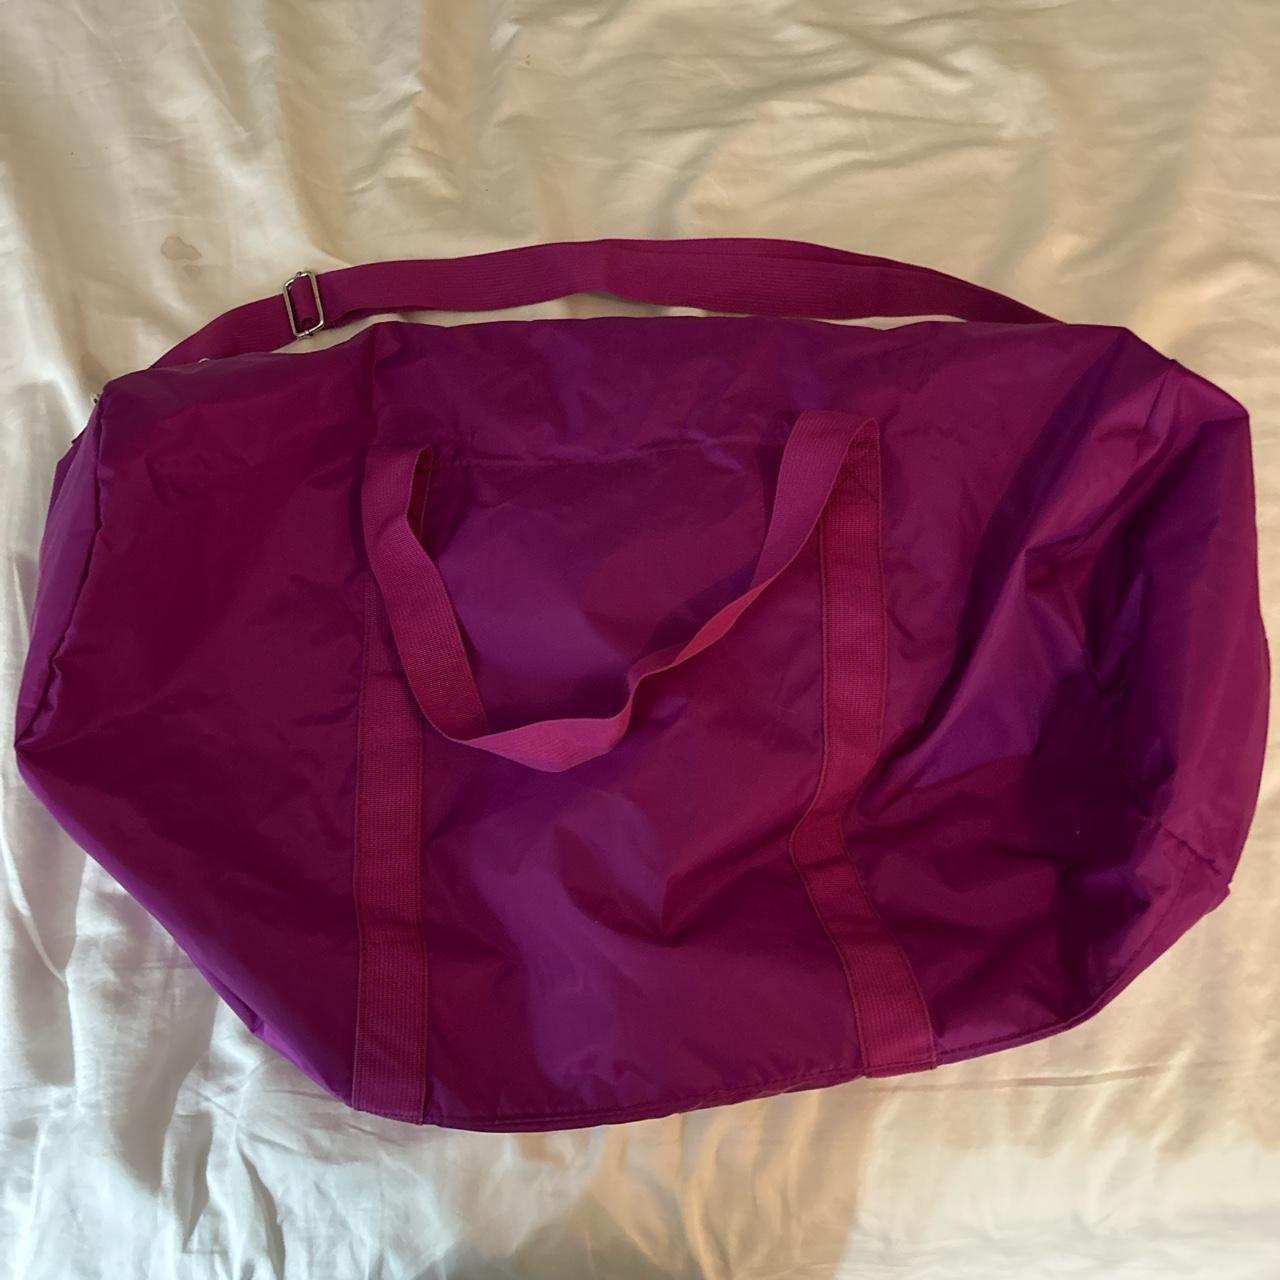 Huge purple duffle bag - LOTS of space! - Depop